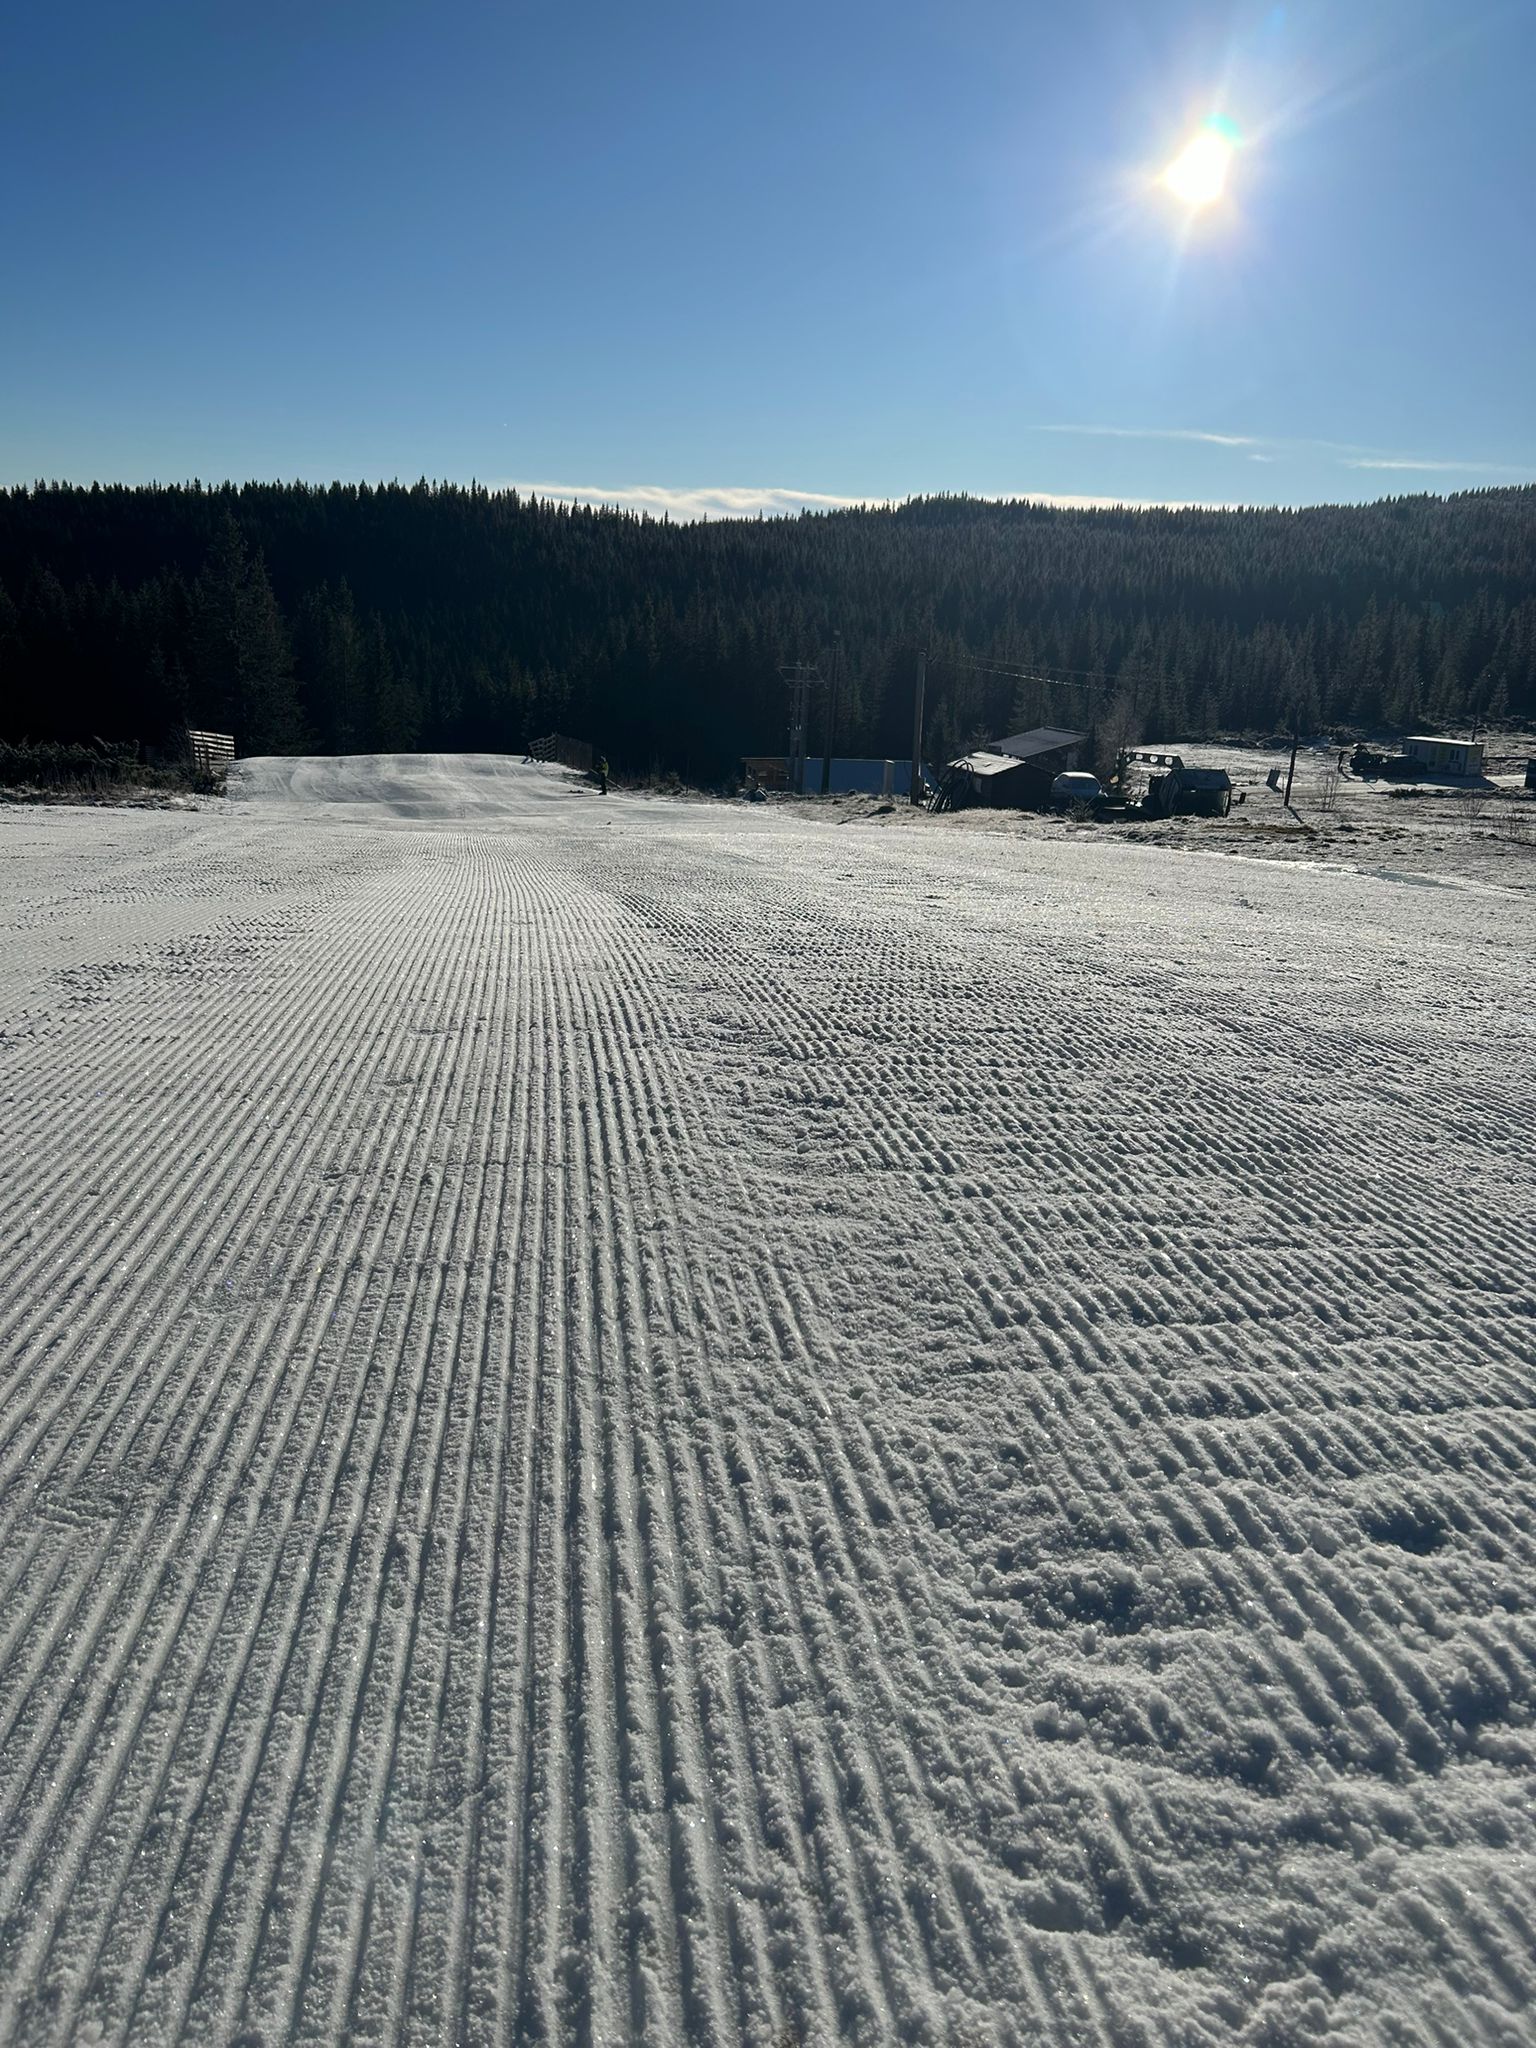 Pasionații sporturilor de iarnă sunt invitați la ski, săniuș și tubing, pe domeniul schiabil de la Buscat